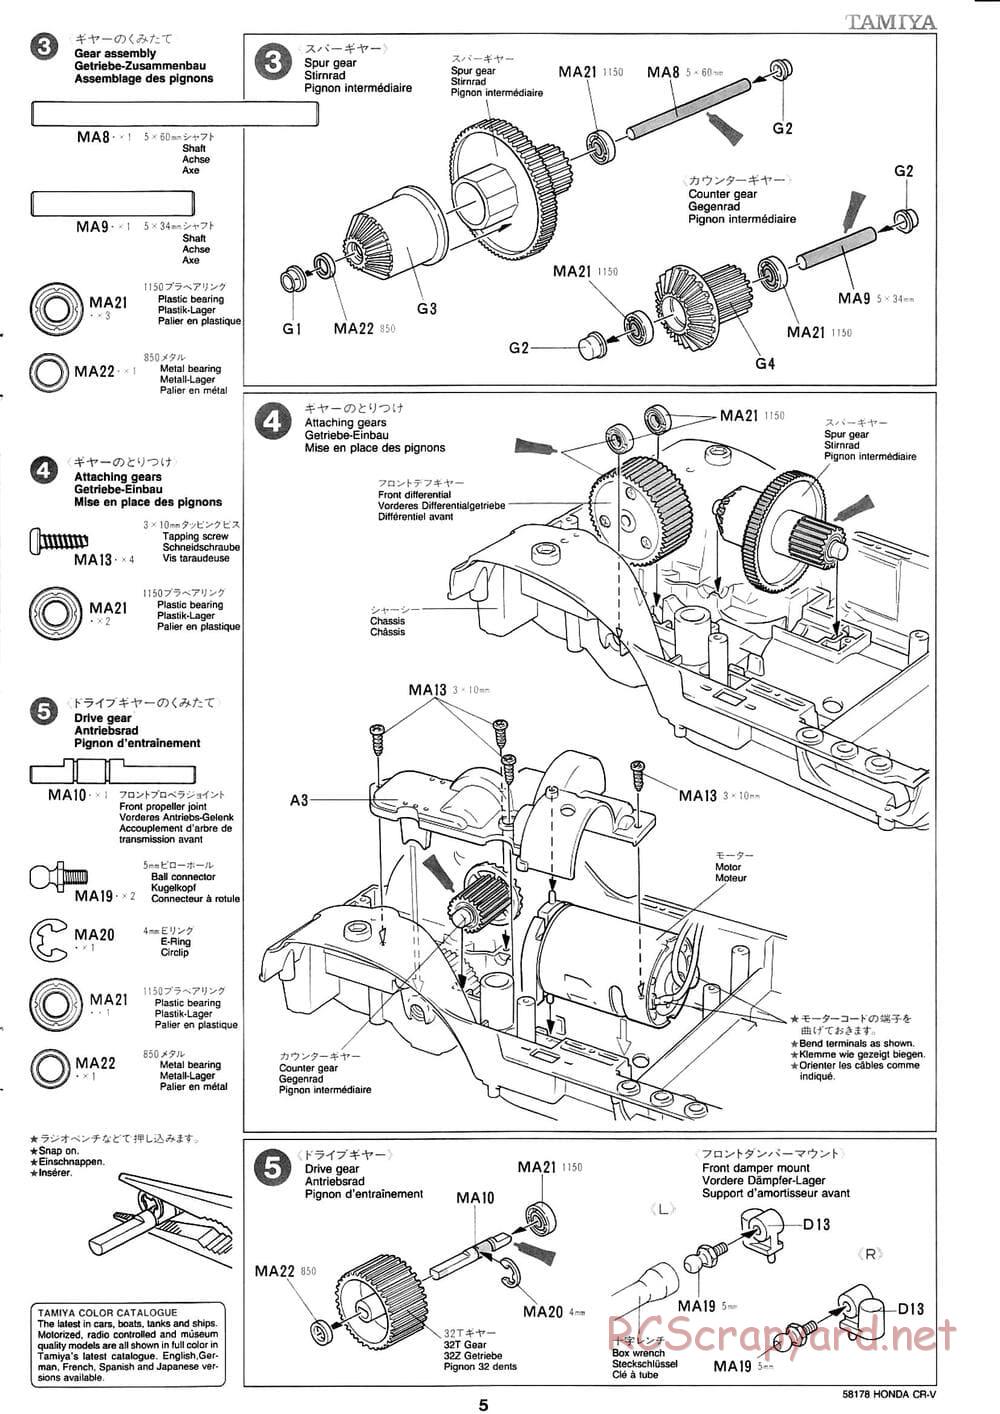 Tamiya - Honda CR-V - CC-01 Chassis - Manual - Page 5